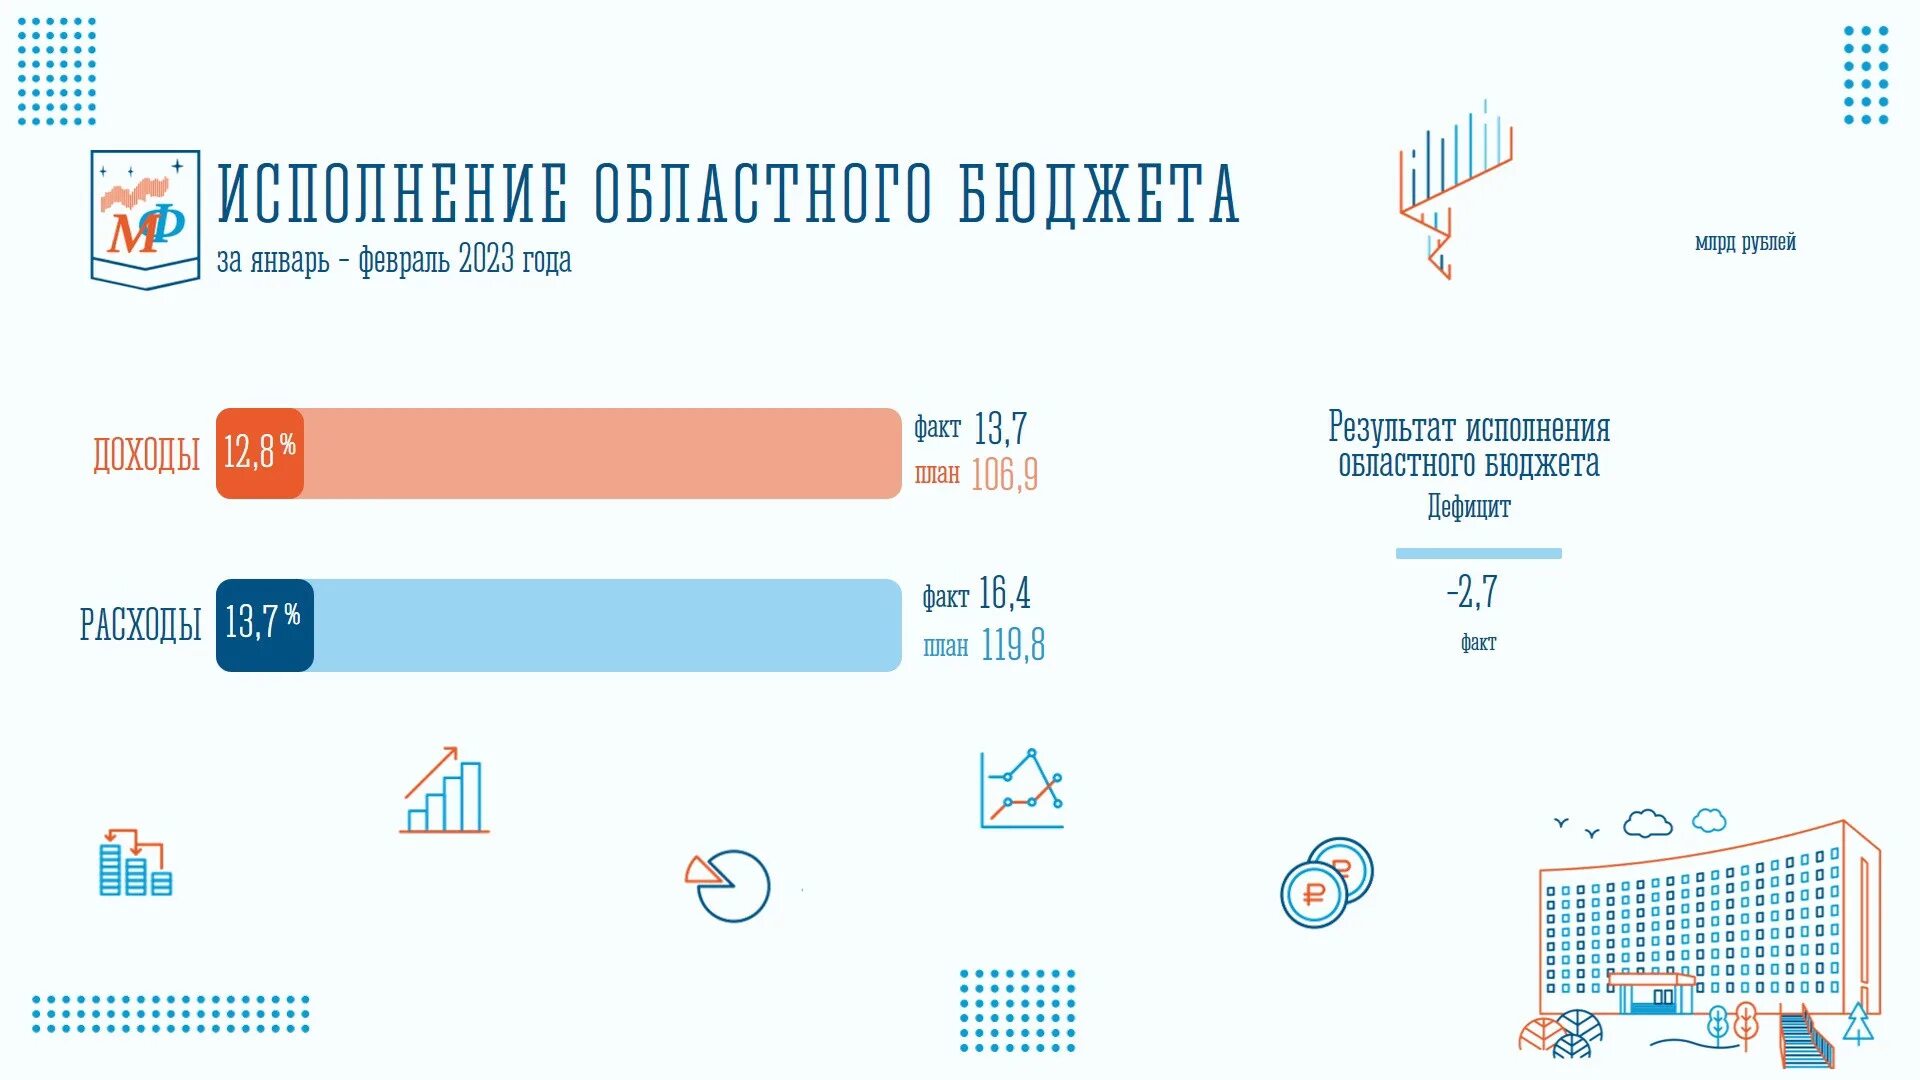 Городской бюджет составляет 78 млн рублей. Исполнение бюджета 2023. Исполнение 2022. Бюджет России на 2023 доходы. Исполнение бюджета РФ 2022.